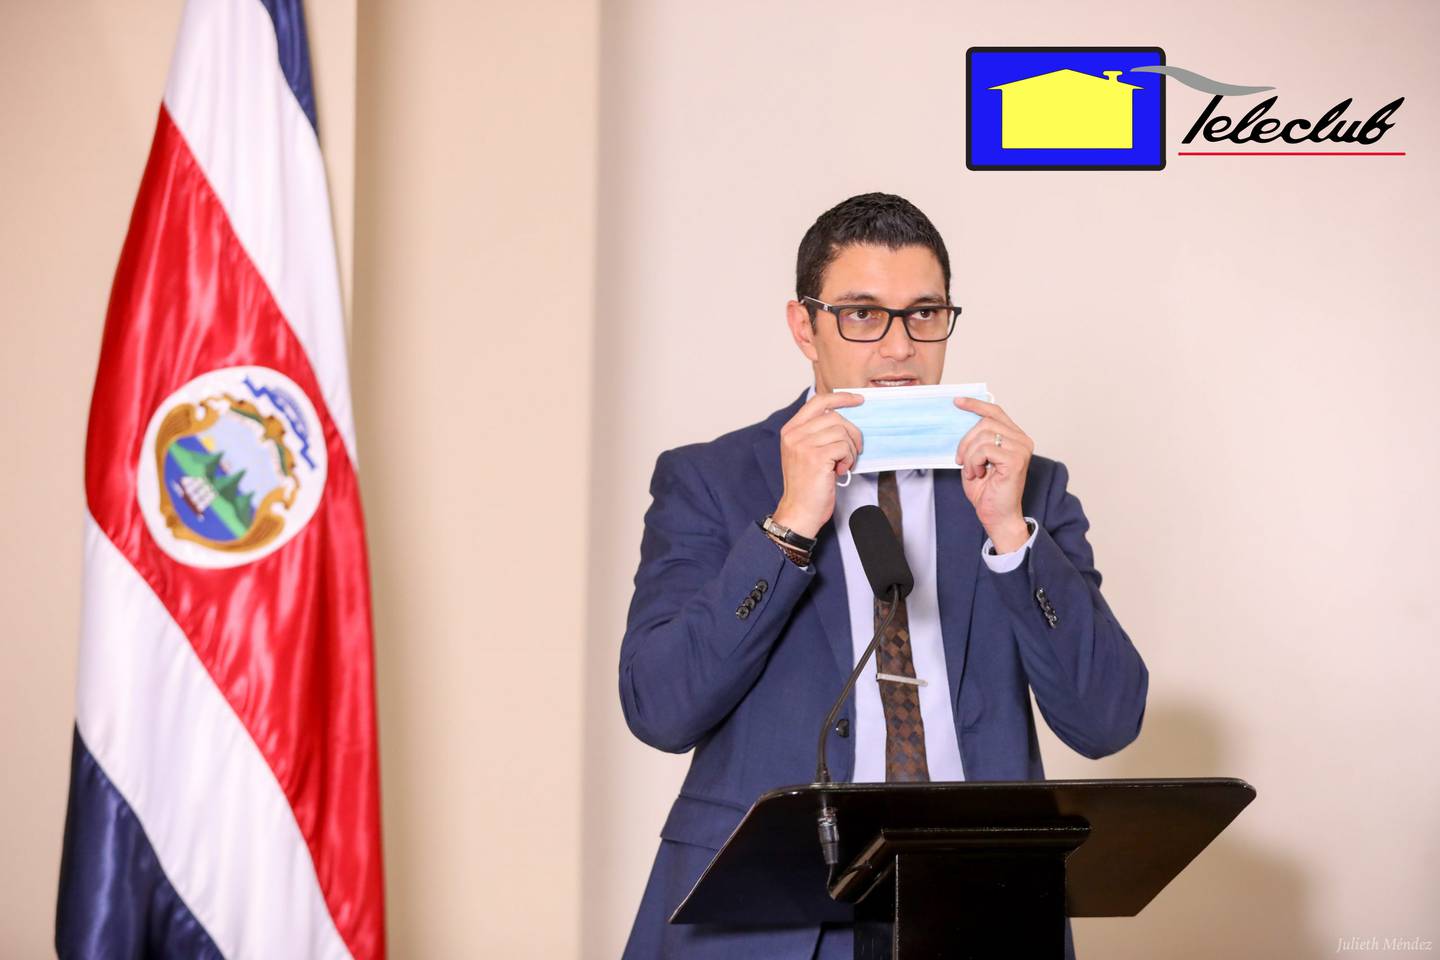 Teleclub le saca sonrisa a ministro de Salud,  Daniel Salas, en medio de la pandemia